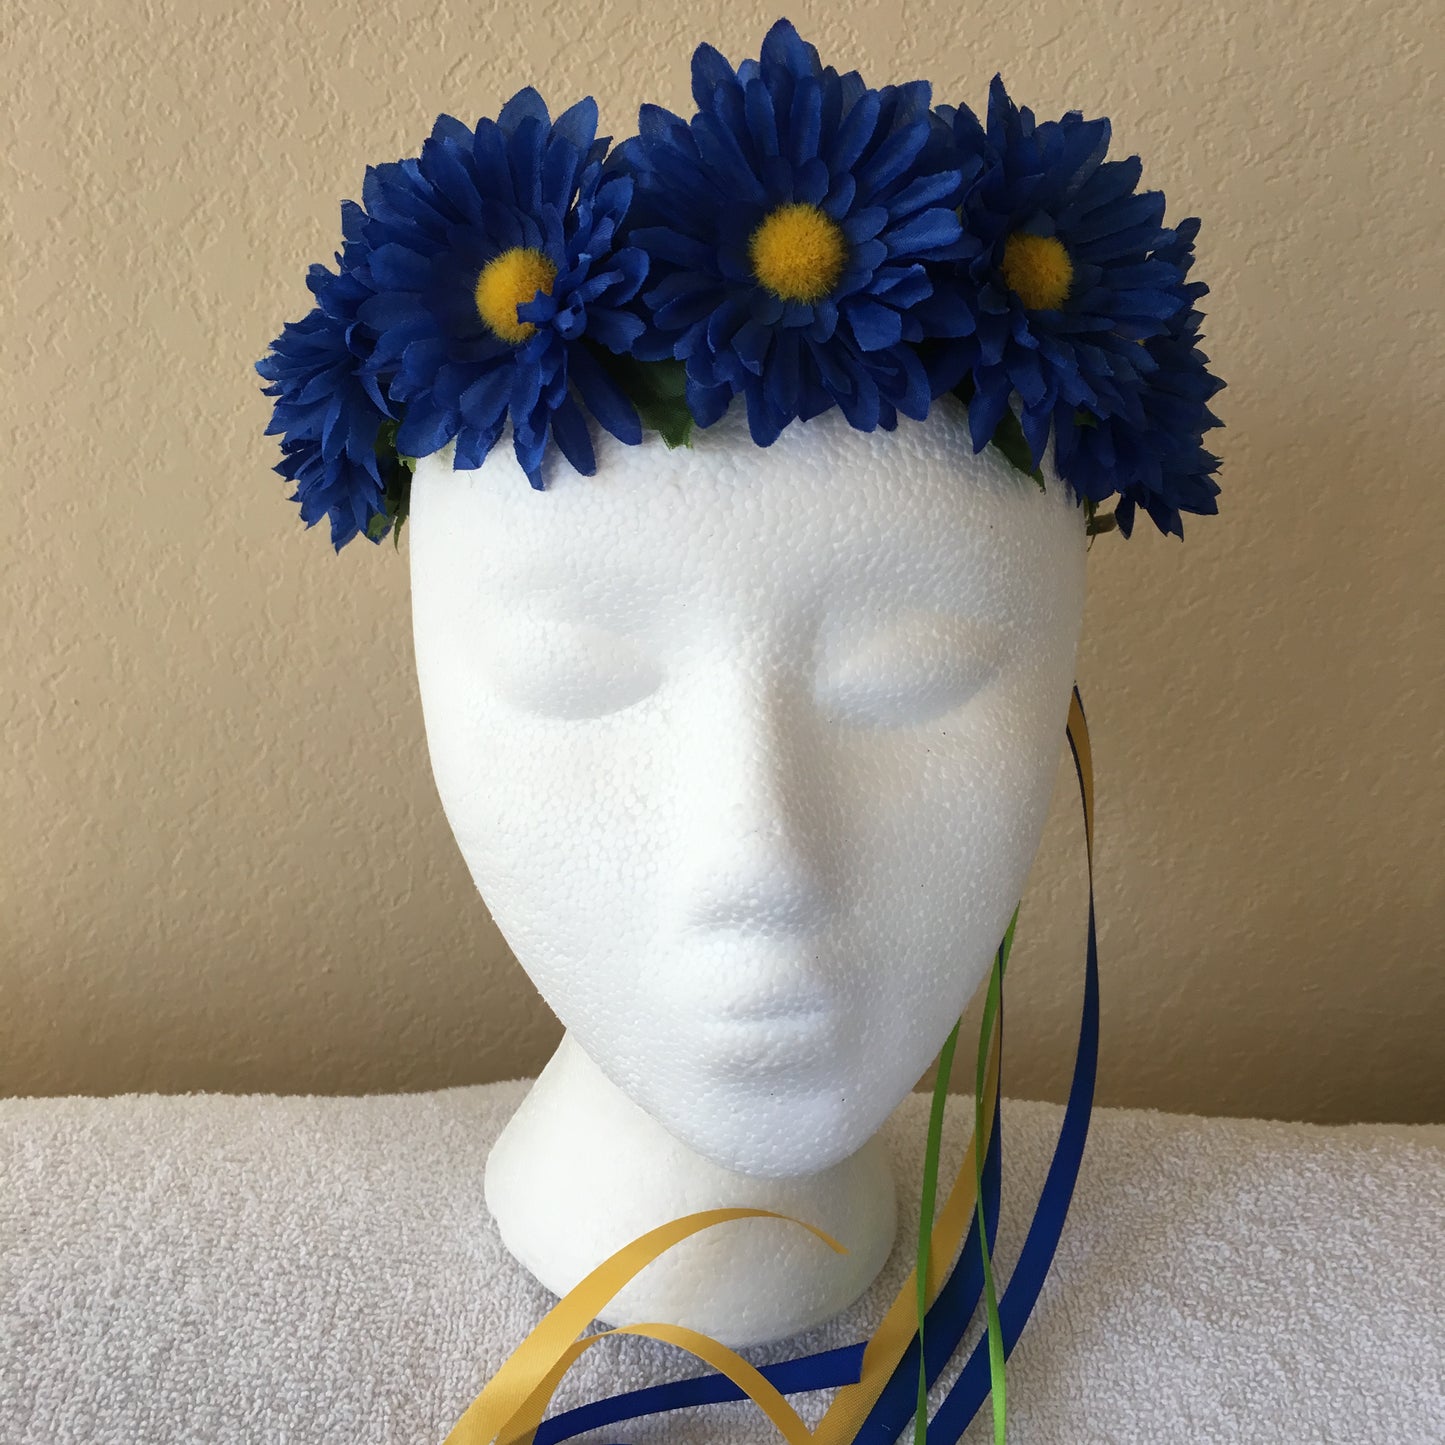 Small Wreath - All dark blue daisies (2)